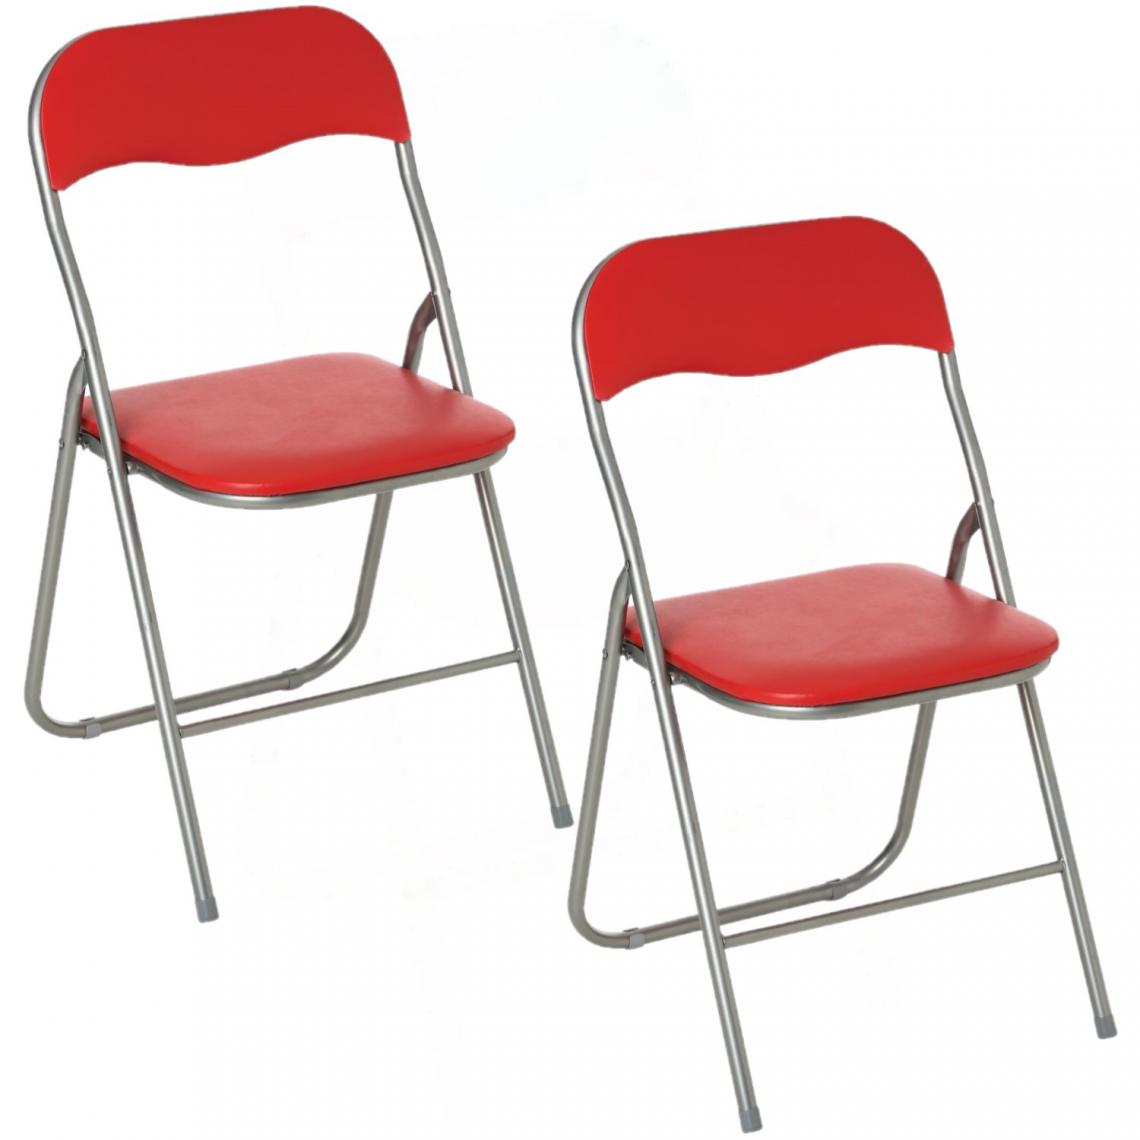 Toilinux - Lot de 2 Chaises pliantes en PVC - Rouge - Chaises